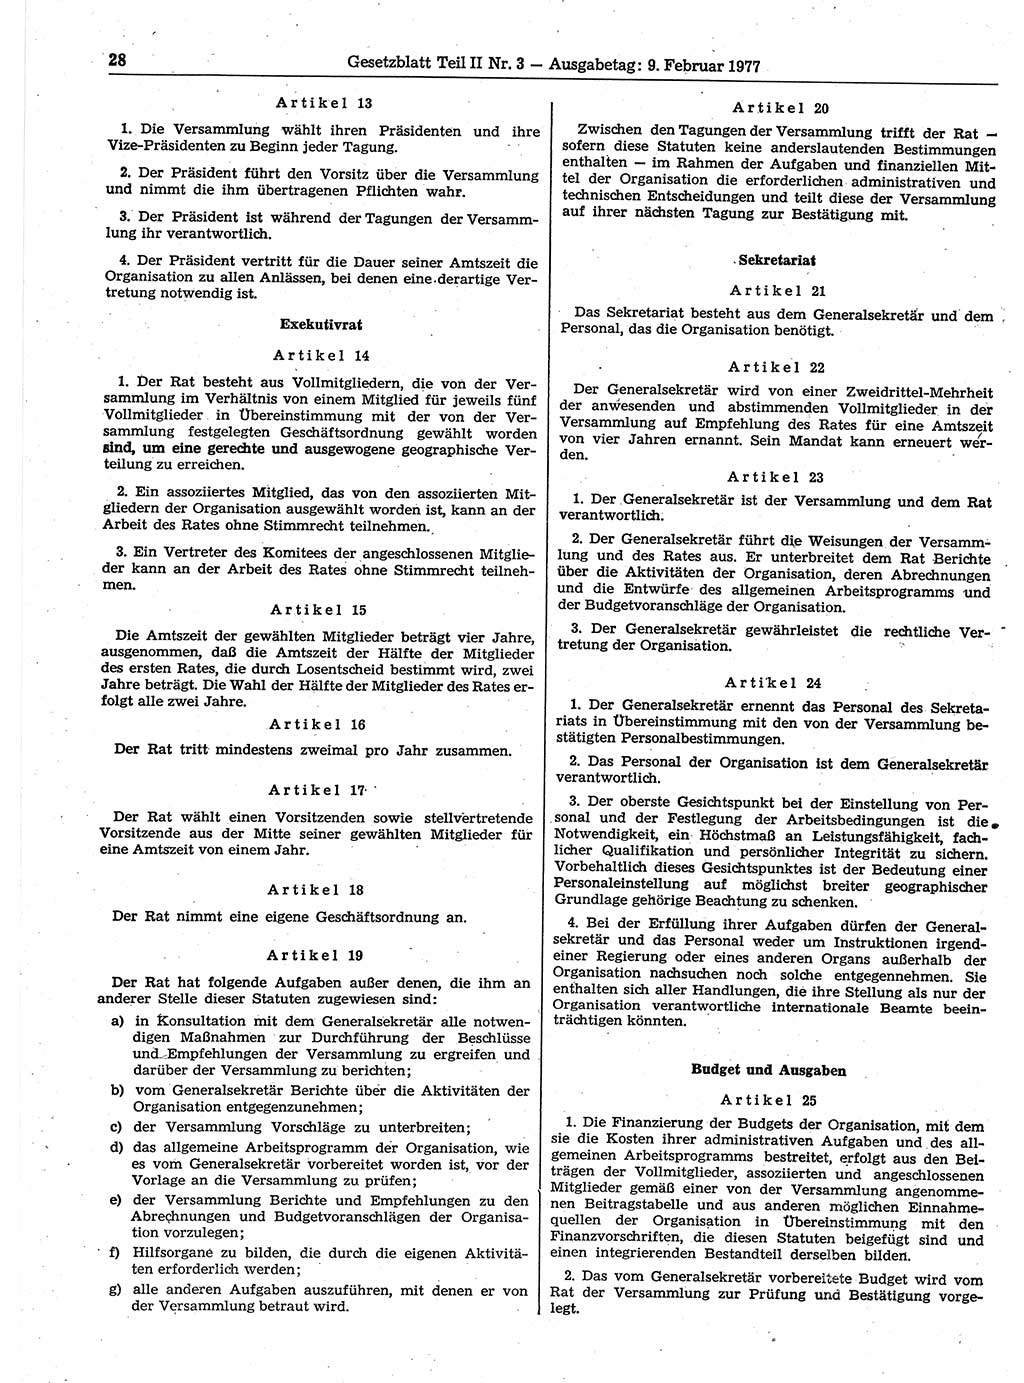 Gesetzblatt (GBl.) der Deutschen Demokratischen Republik (DDR) Teil ⅠⅠ 1977, Seite 28 (GBl. DDR ⅠⅠ 1977, S. 28)